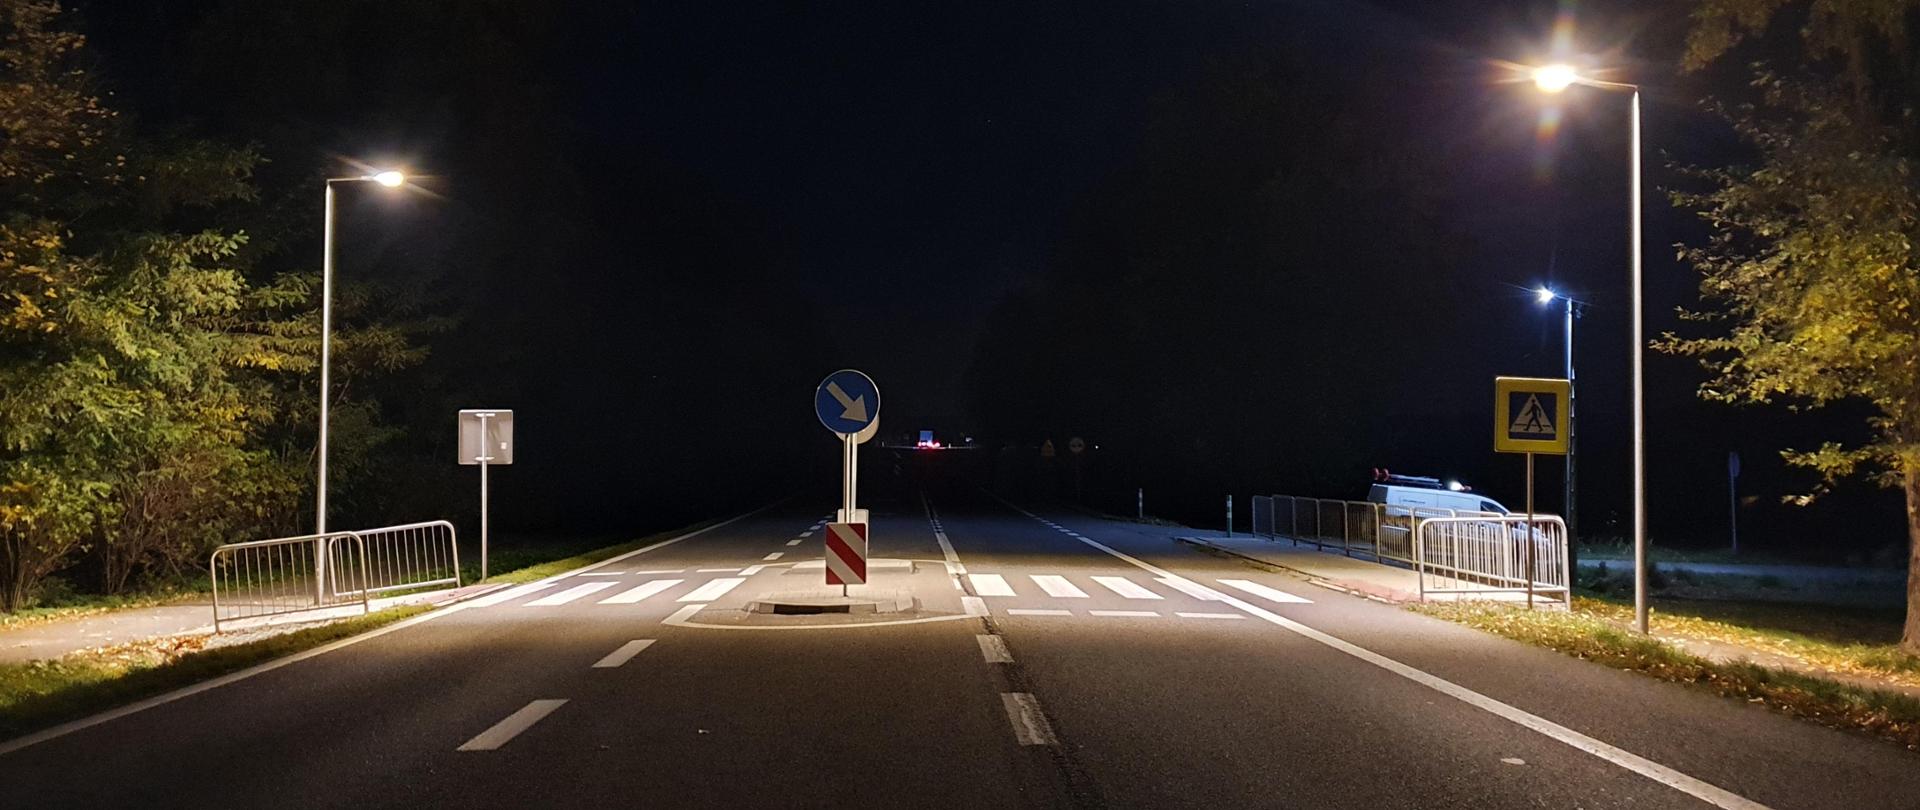 Oświetlone przejście dla pieszych. Zdjęcie robione w późnych godzinach nocnych. W oddali widoczne pojazdy.